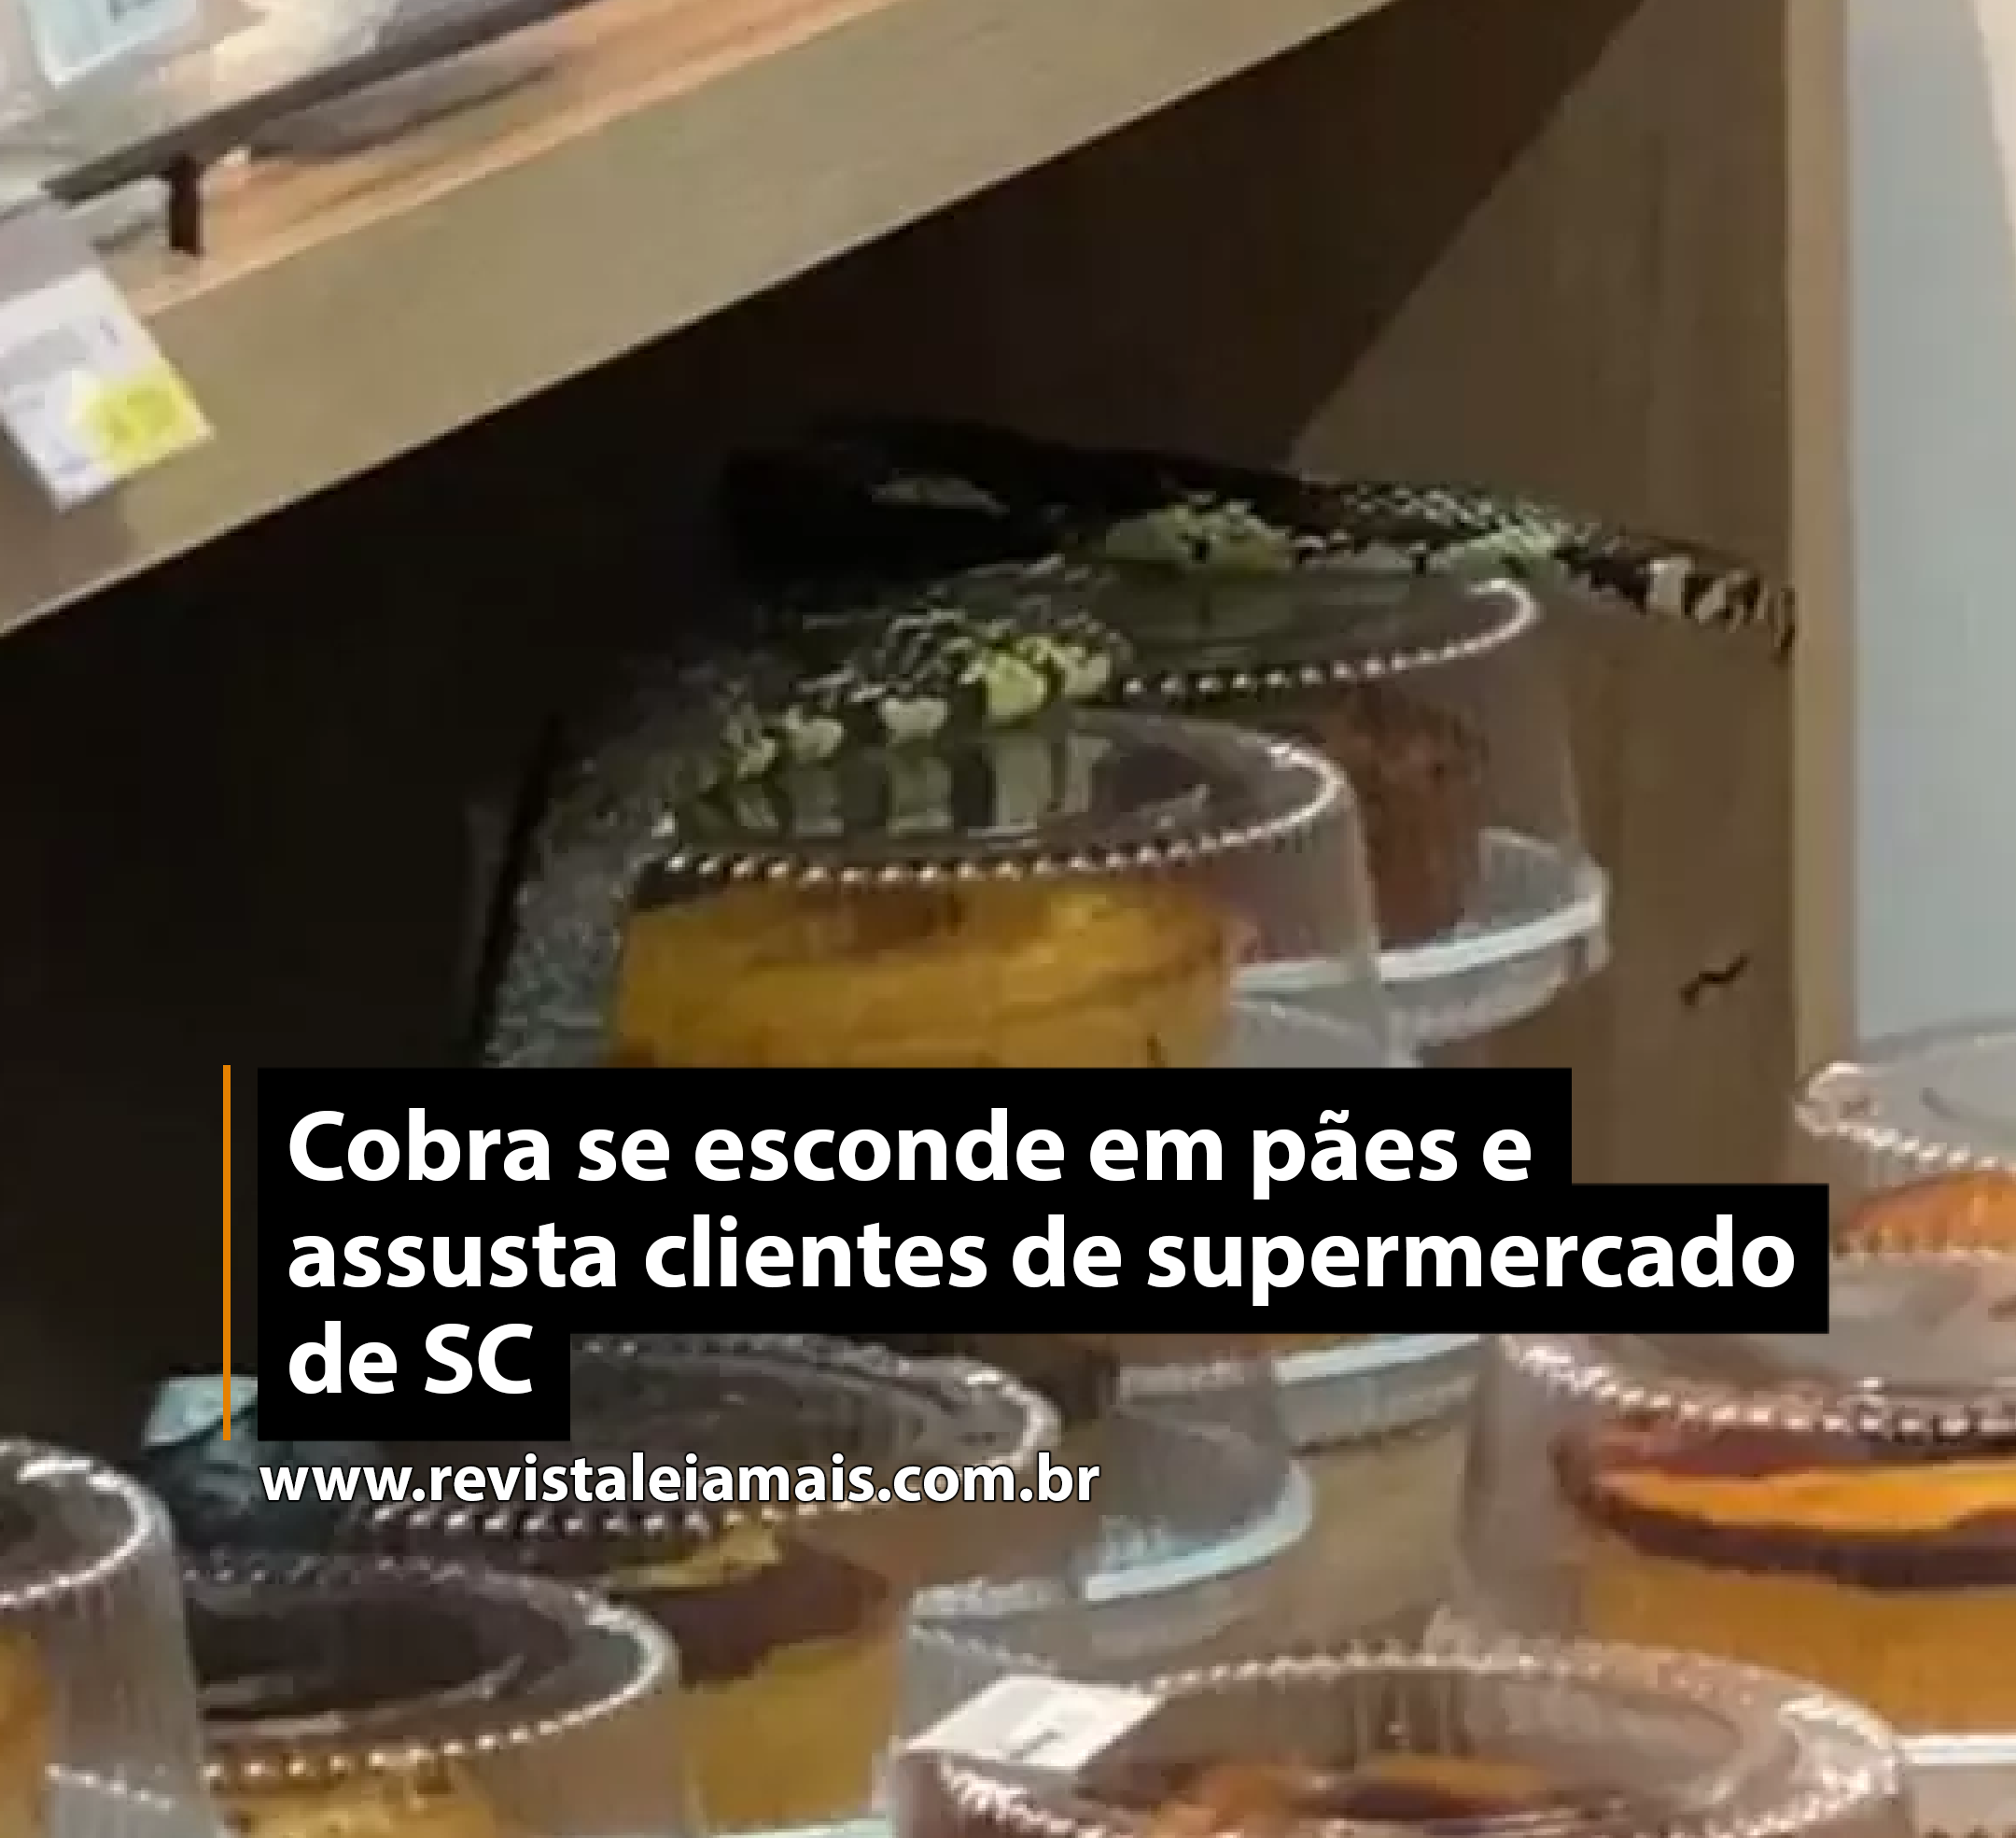 Cobra se esconde em pães e assusta clientes de supermercado de SC